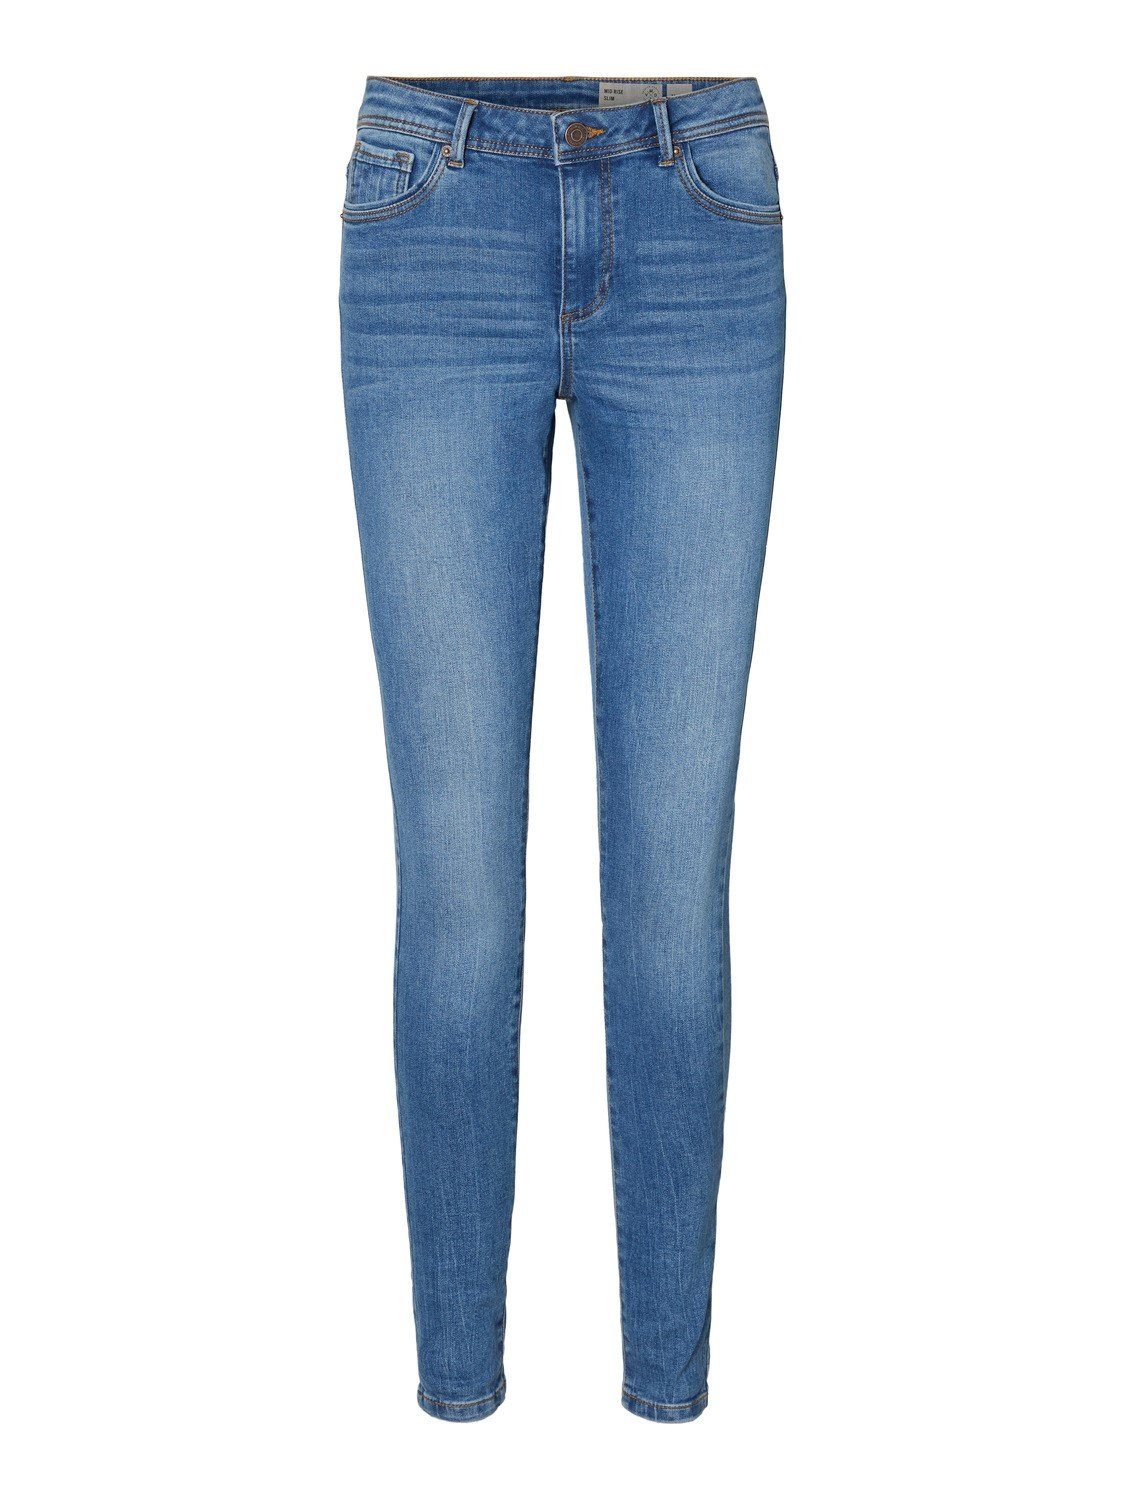 Vero Moda Slim-Fit Jeans online kaufen | OTTO